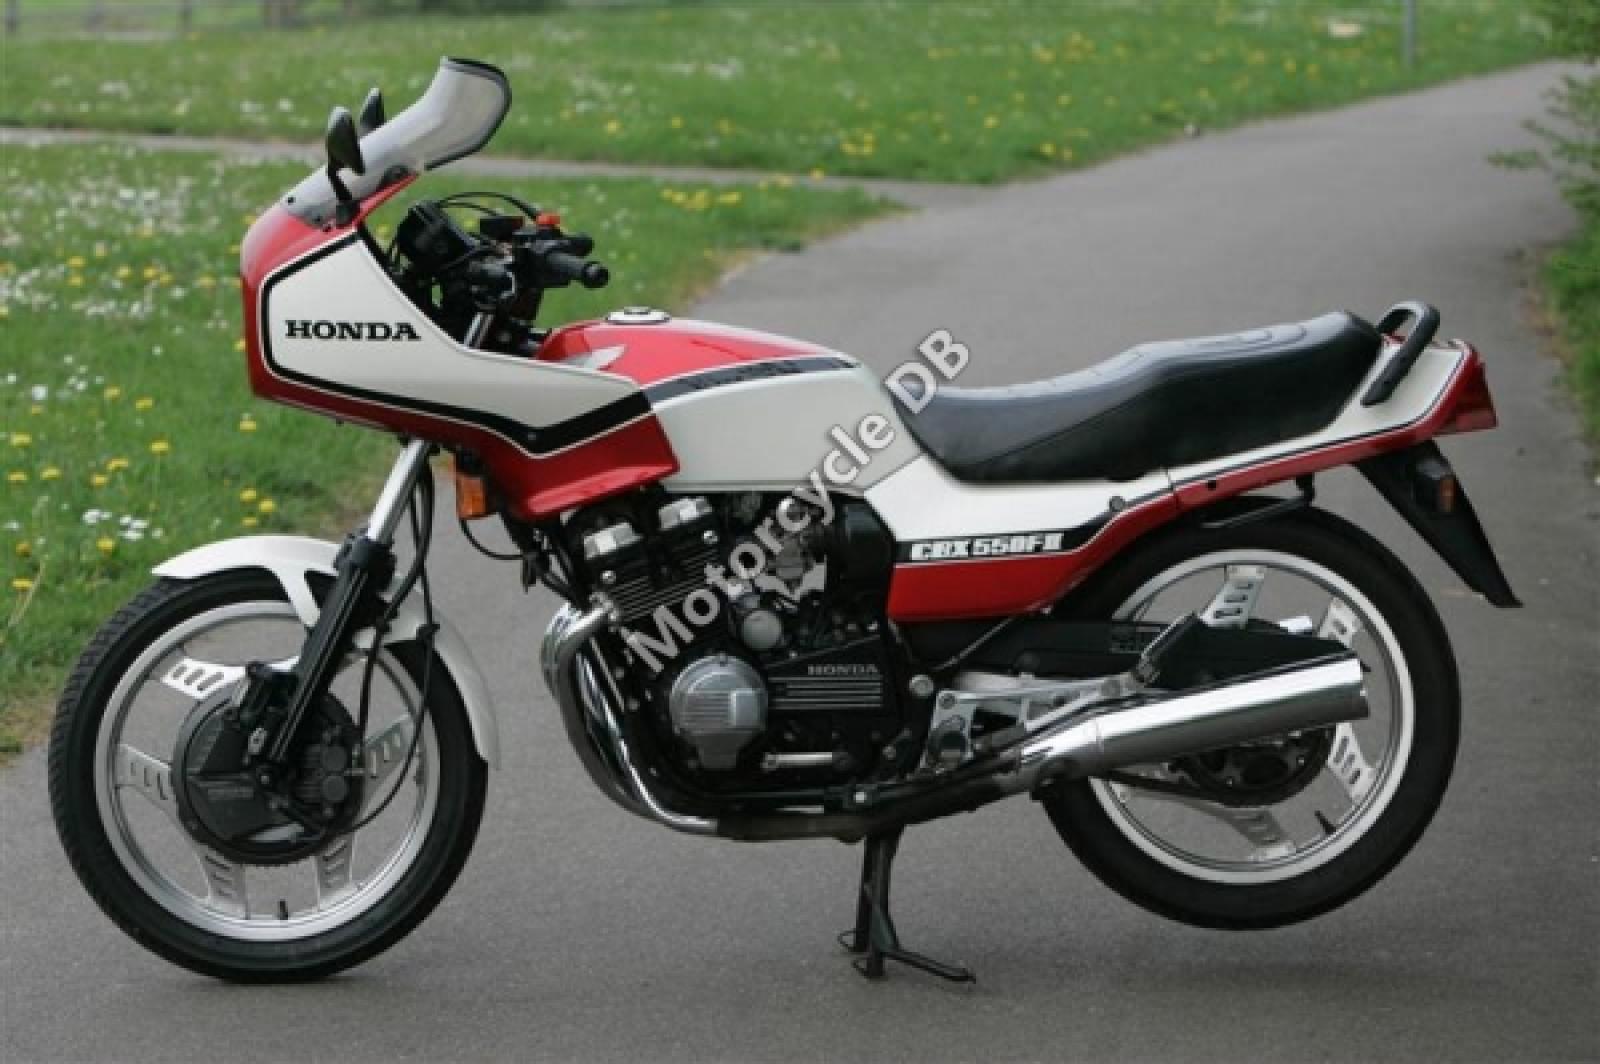 Honda Cbx550f2